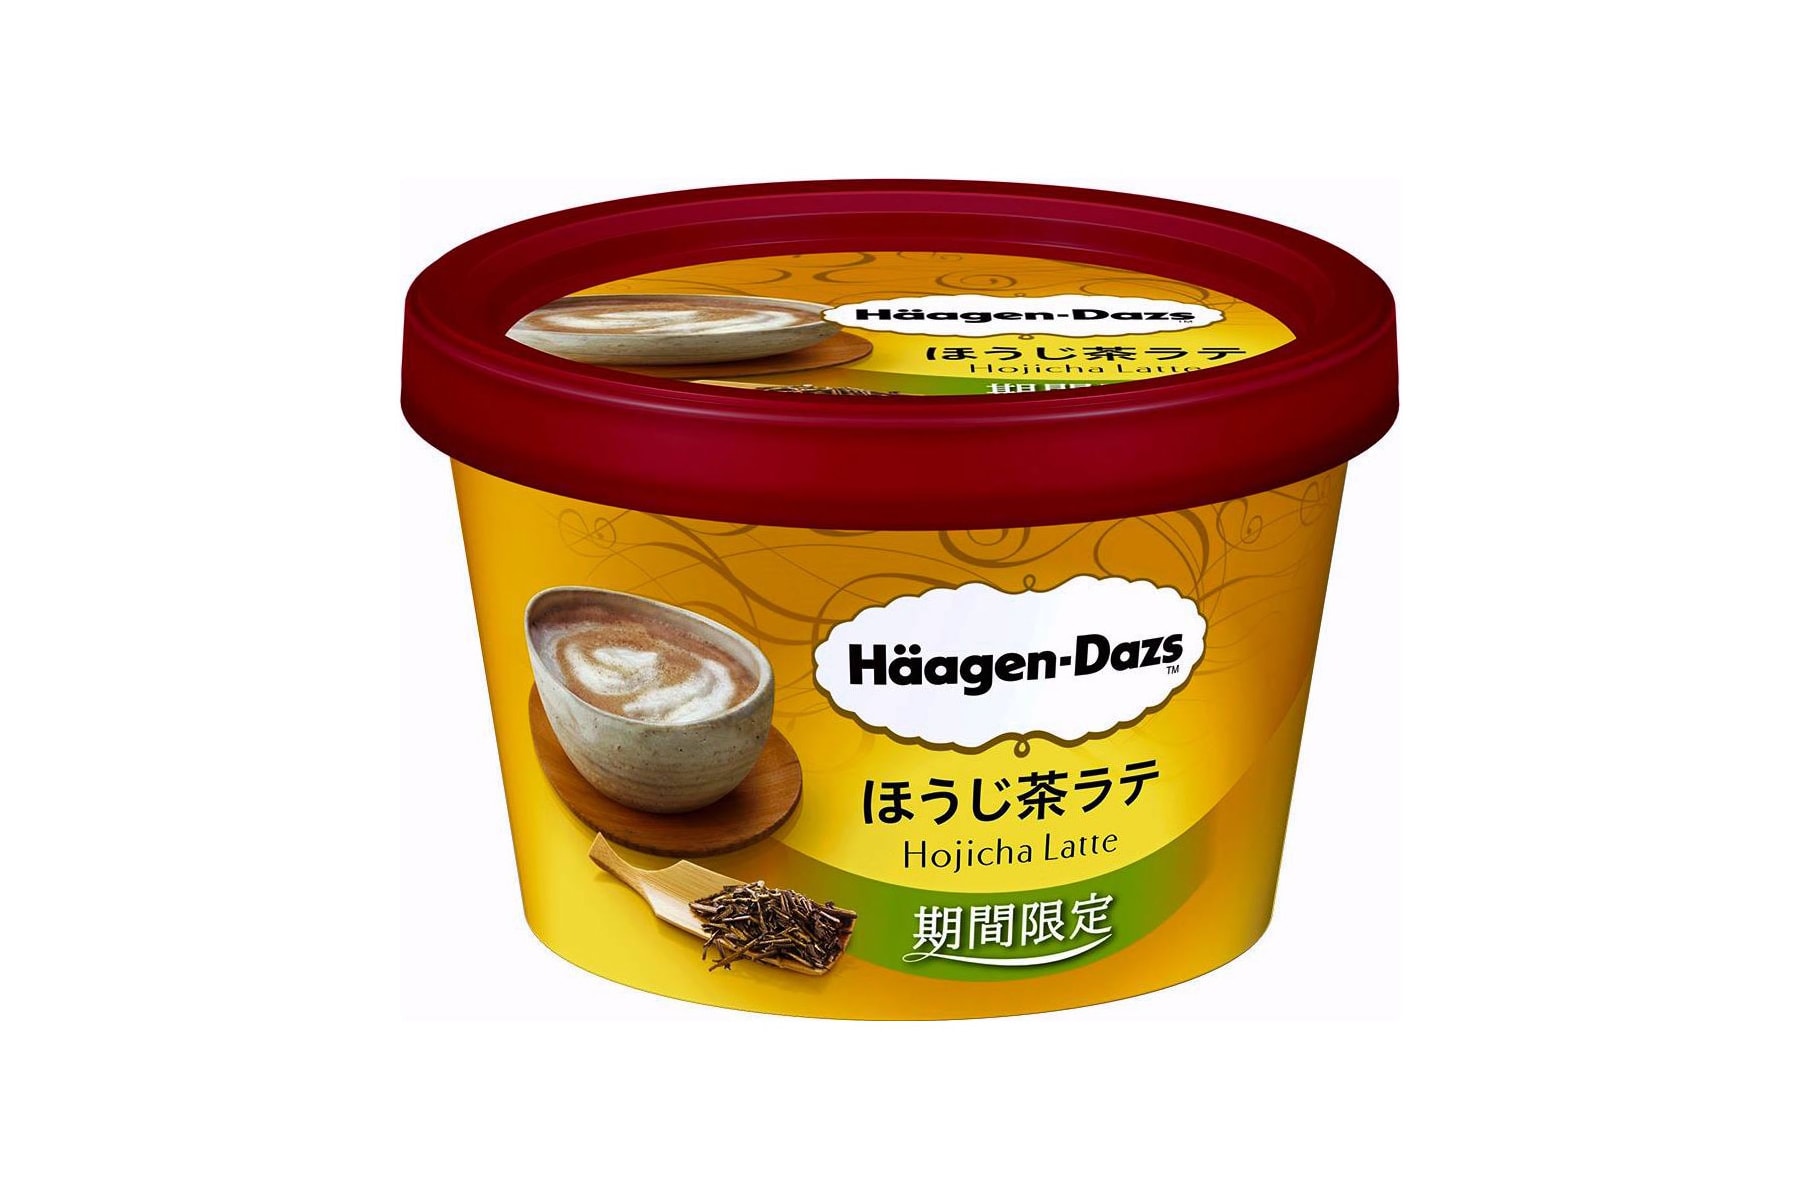 日本 Häagen-Dazs 推出期間限定「焙茶拿鐵」口味雪糕